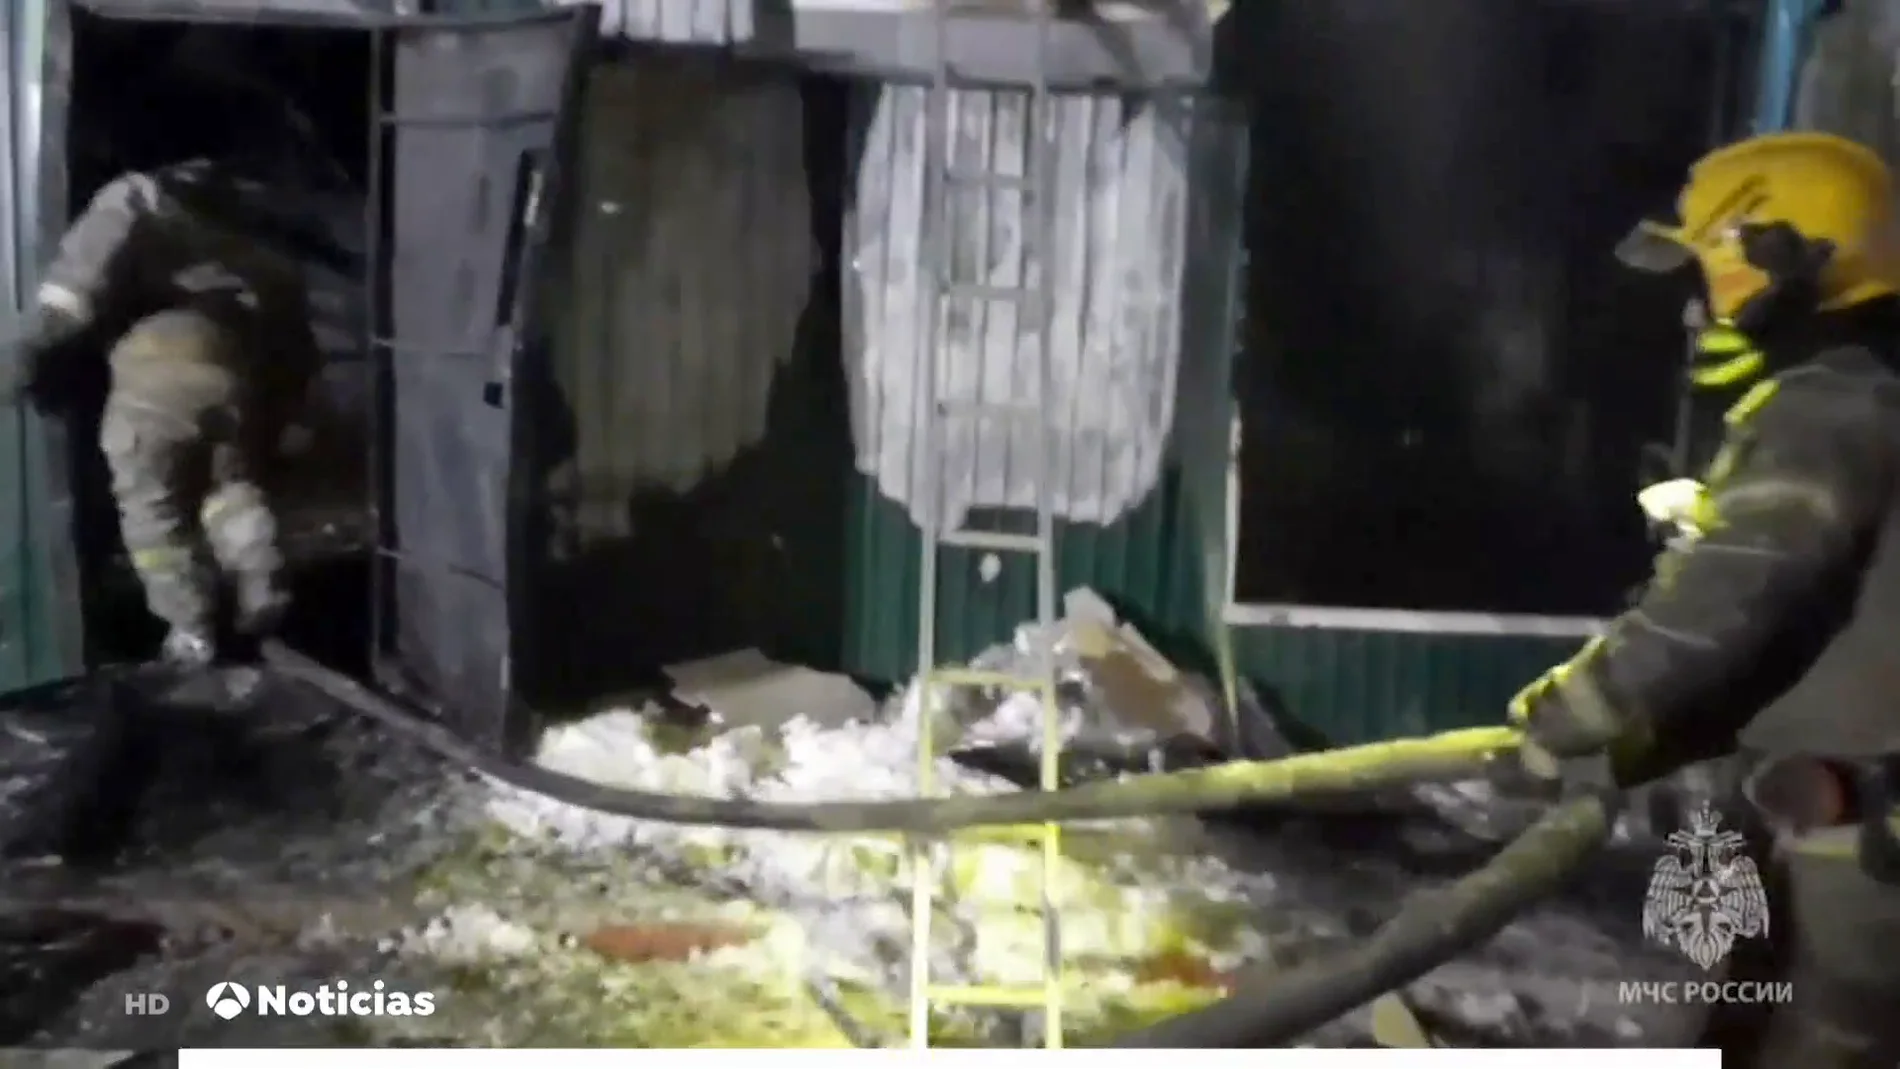 Al menos 20 personas han fallecido en el incendio de una residencia ilegal de Siberia